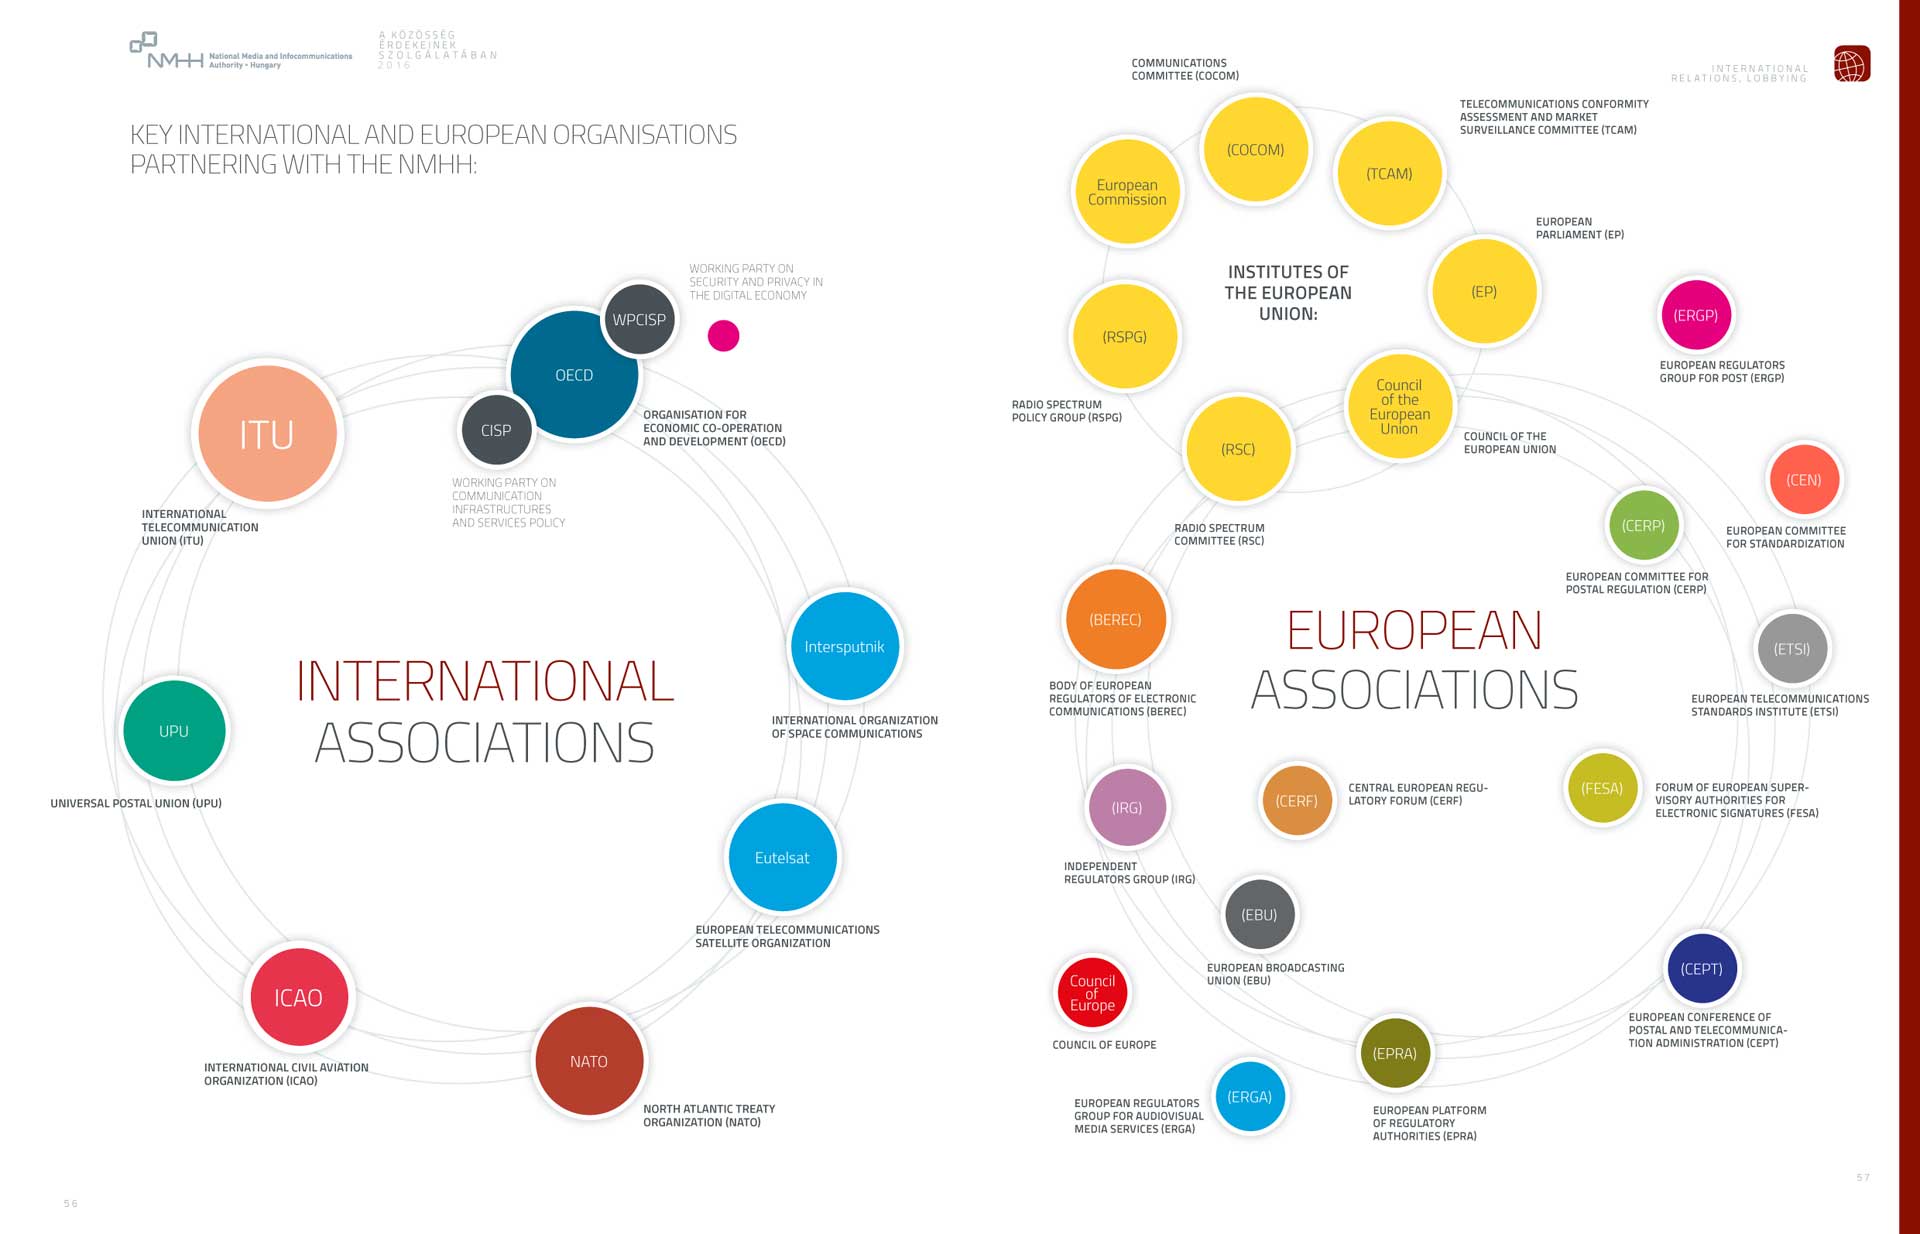 Jelenetősebb nemzetközi és európai szervezetek, amelyekkel az NMHH szakmai kapcsolatot tart fenn